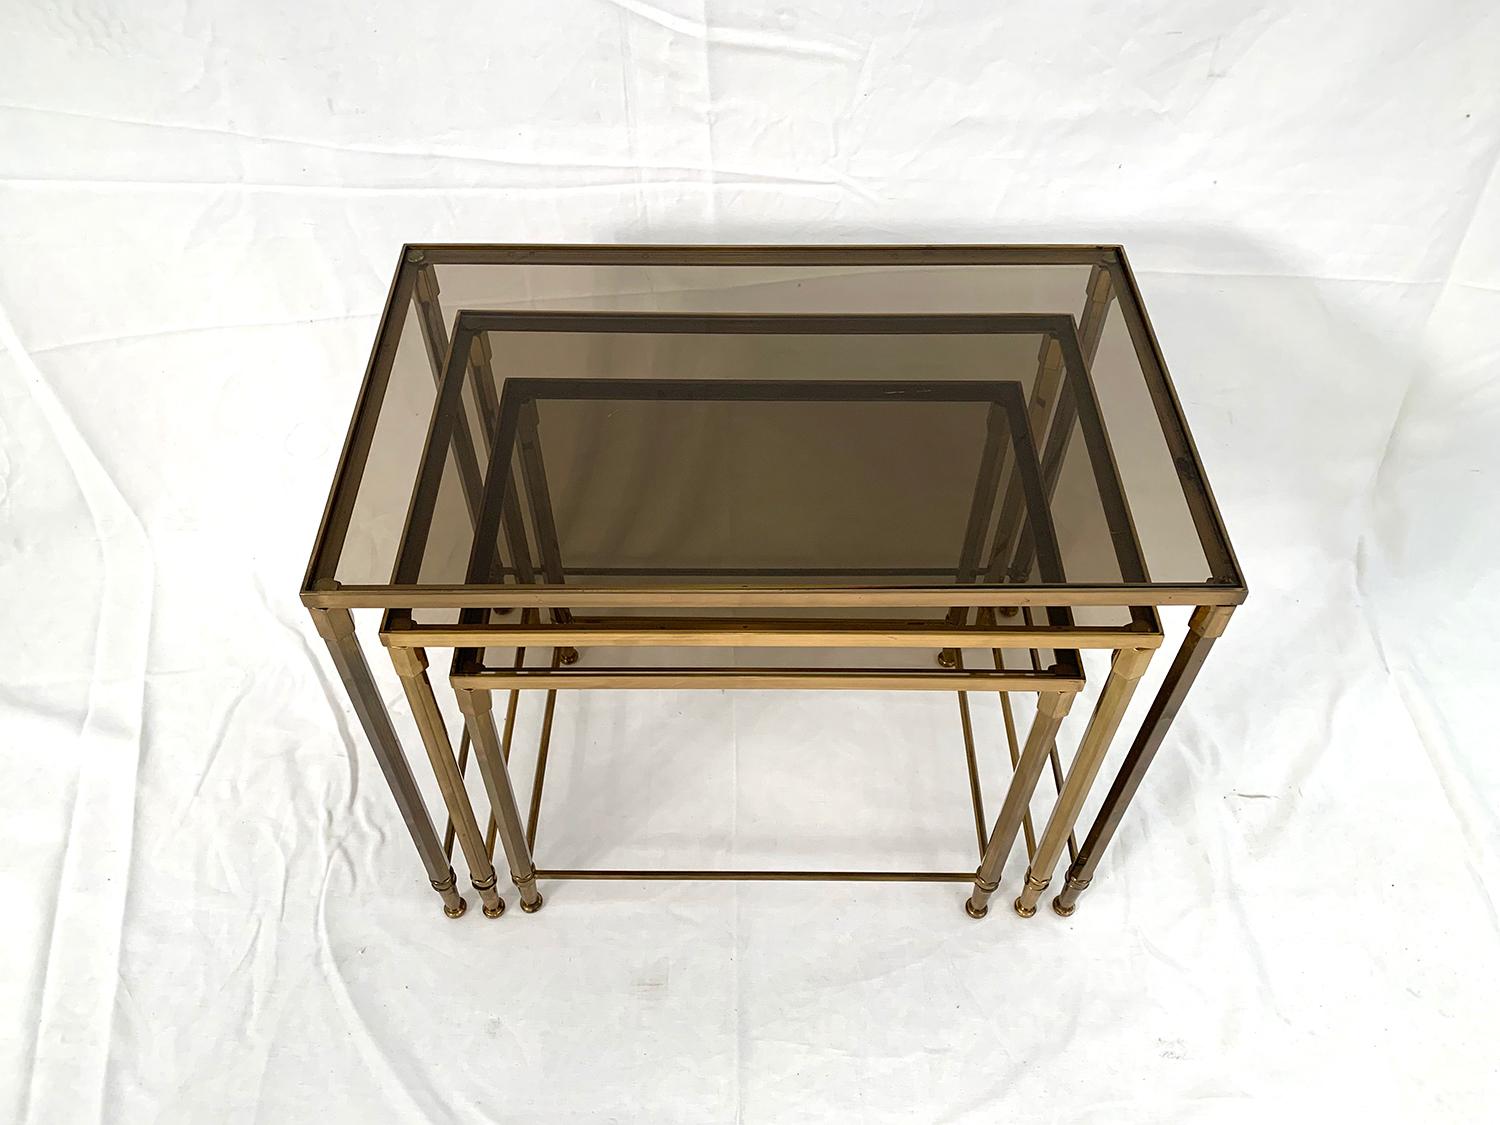 Superb set of brass nesting table topped by smoked glass.

Superbe ensemble de tables gigognes en laiton surmontées par trois de plateaux en verre fumé.